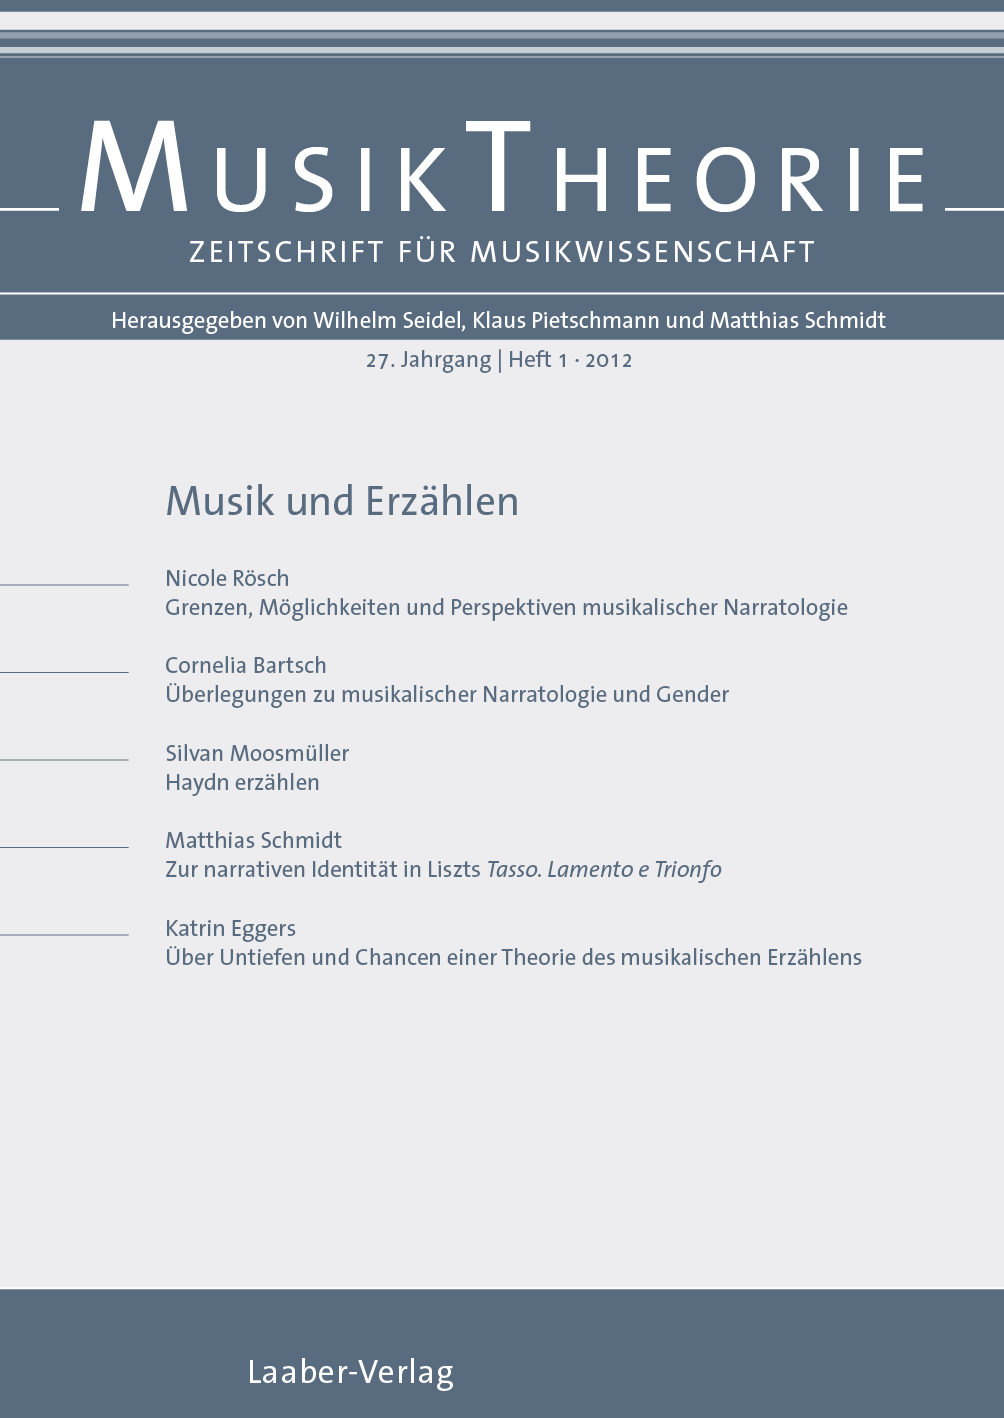 Musiktheorie Heft 1/2012